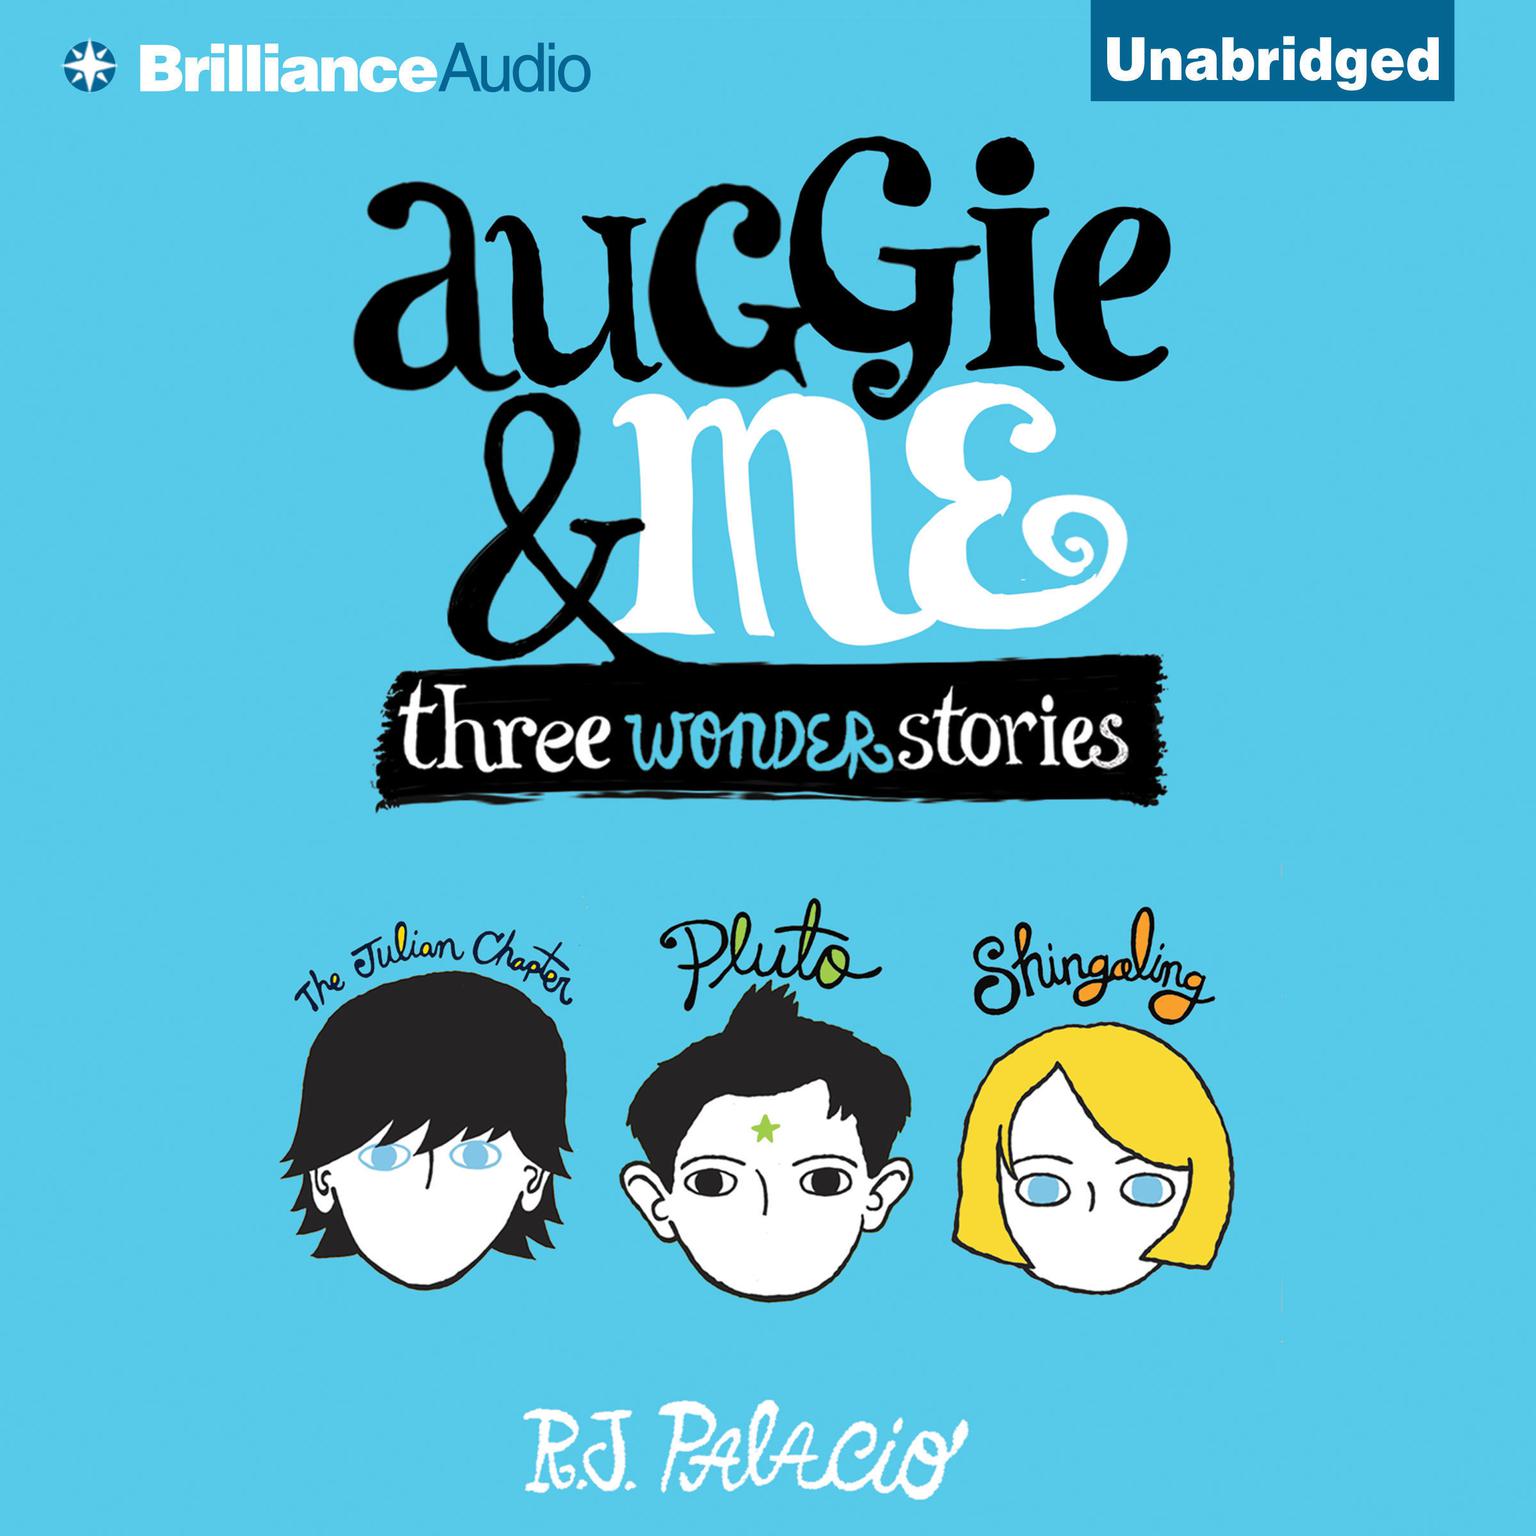 Auggie & Me: Three Wonder Stories Audiobook, by R. J. Palacio